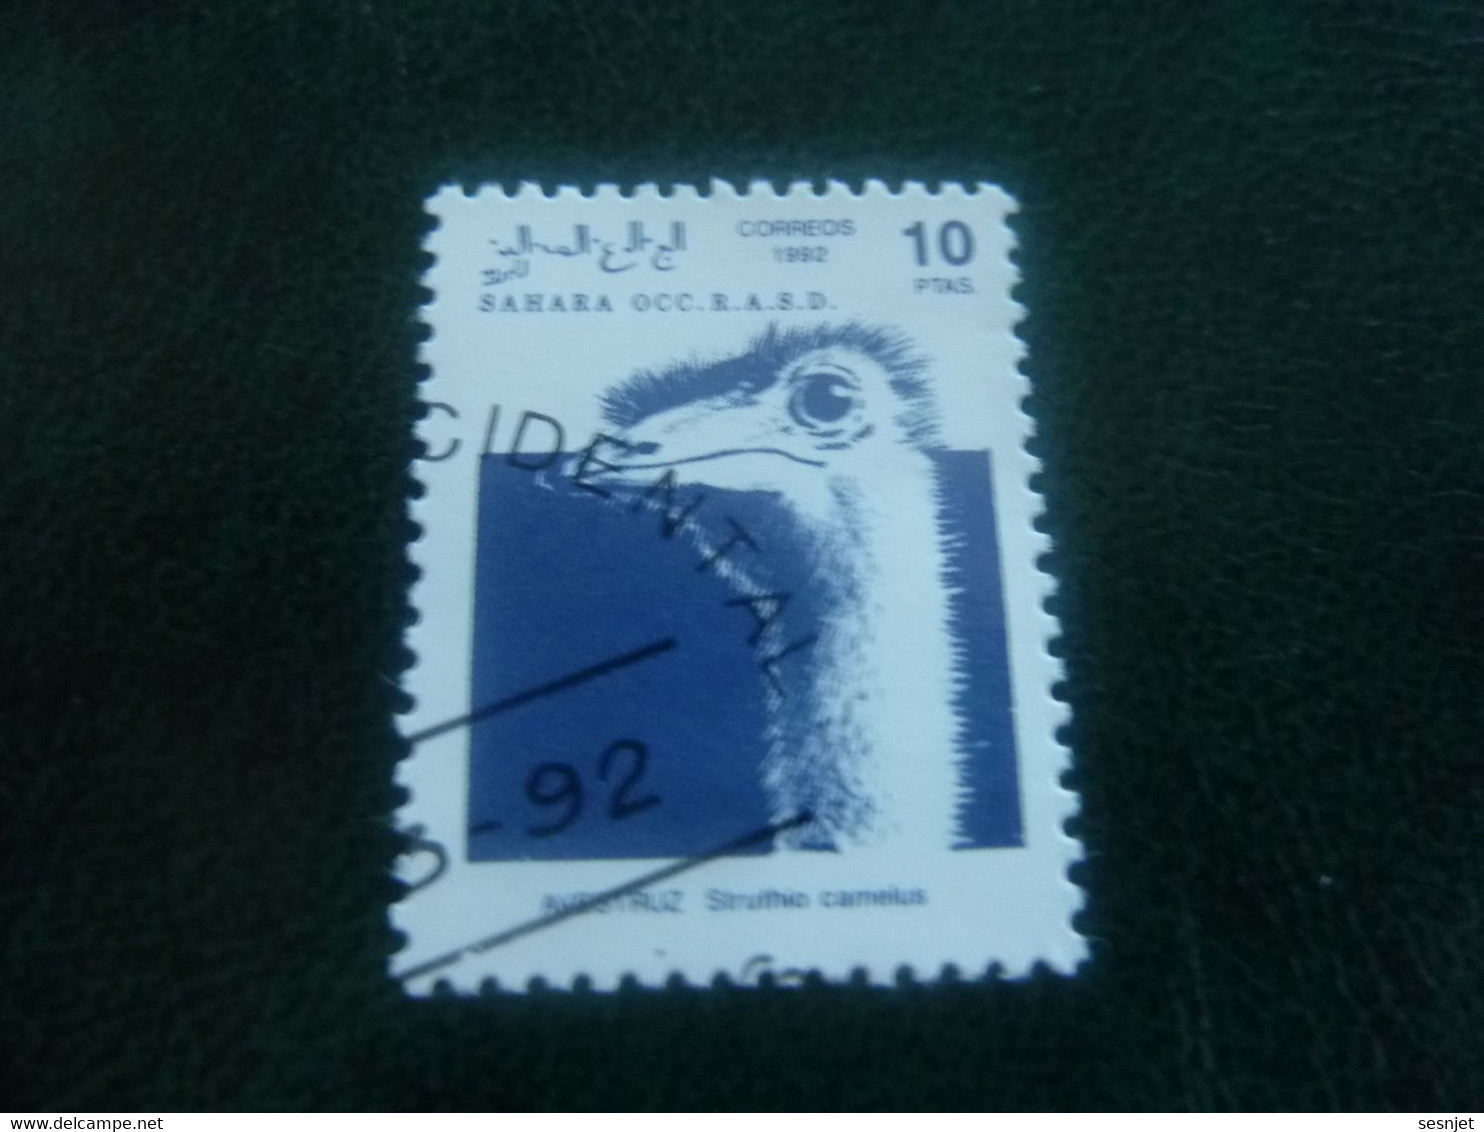 Sahara Occ R.a.sd.d. - Autruche - Val 10 Ptas - Bleu - Oblitéré - Année 1992 - - Struisvogels